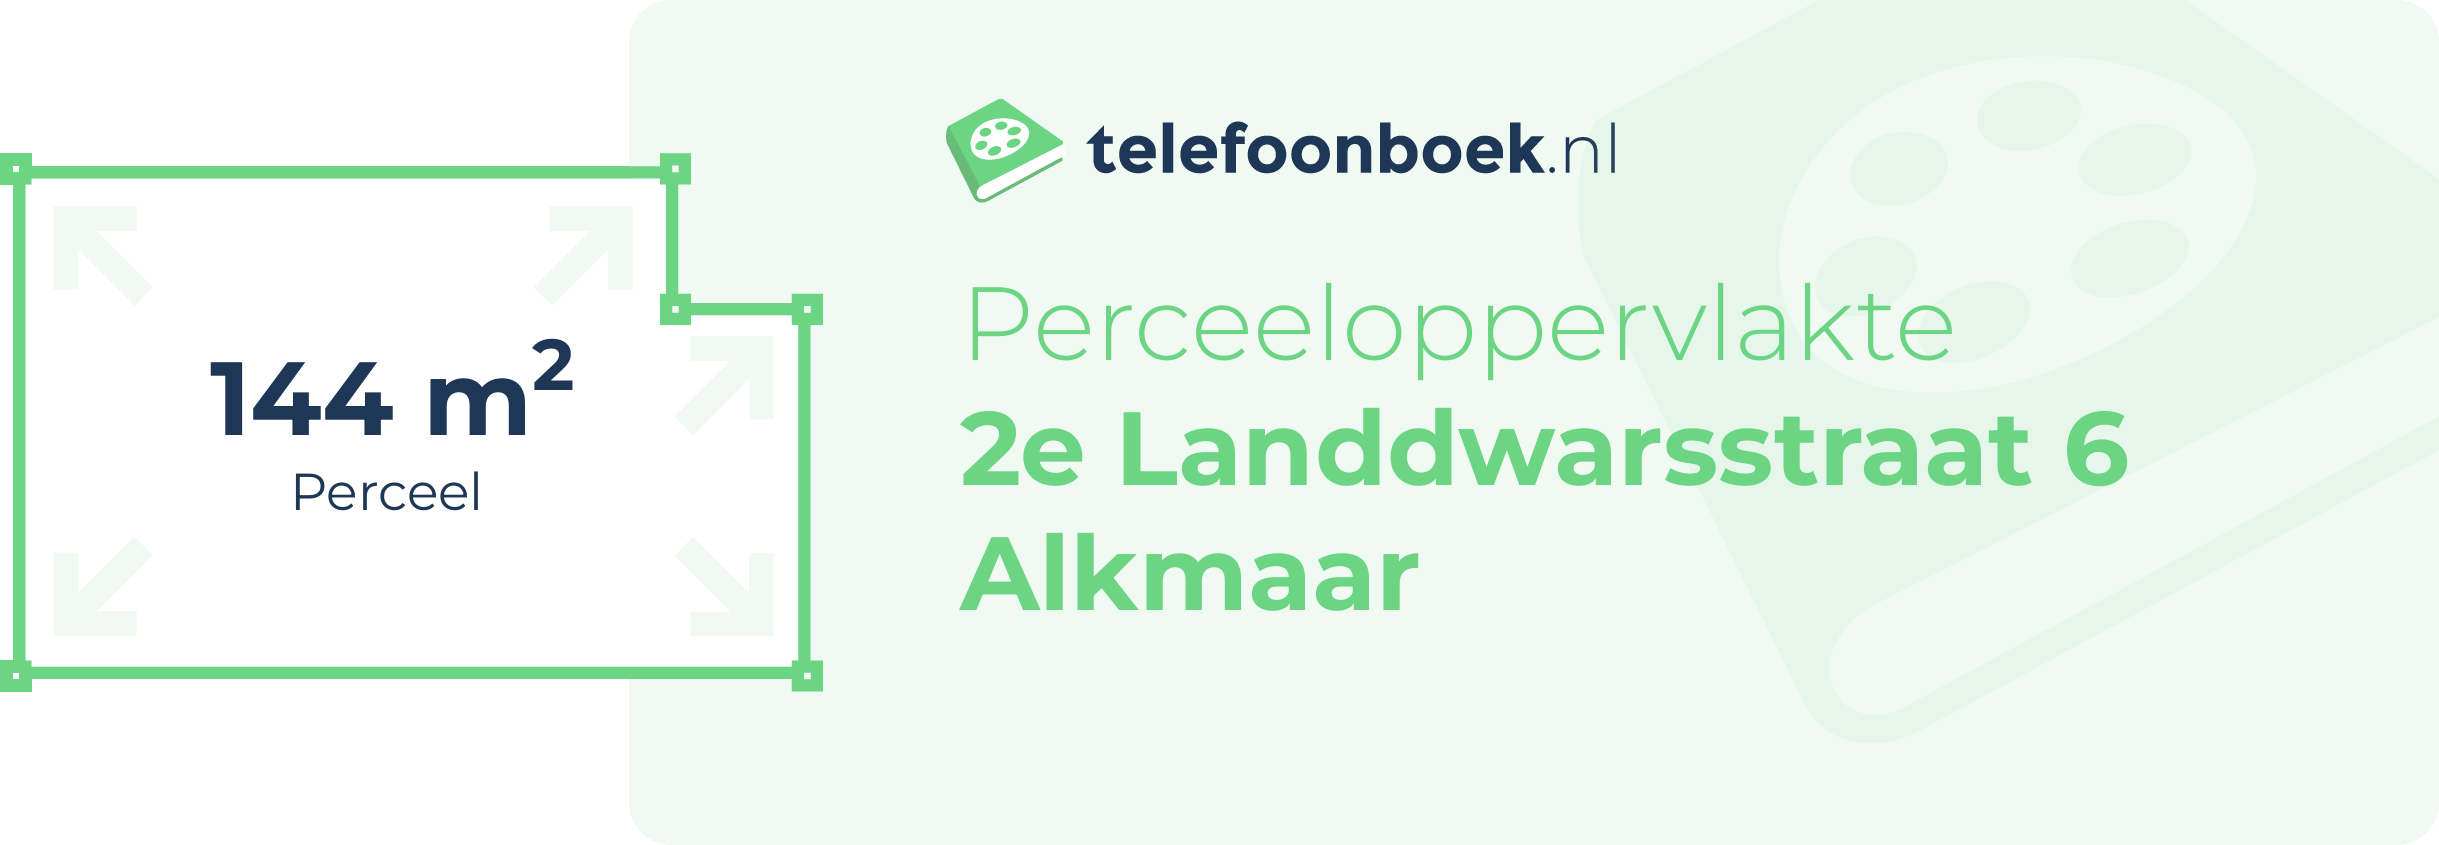 Perceeloppervlakte 2e Landdwarsstraat 6 Alkmaar